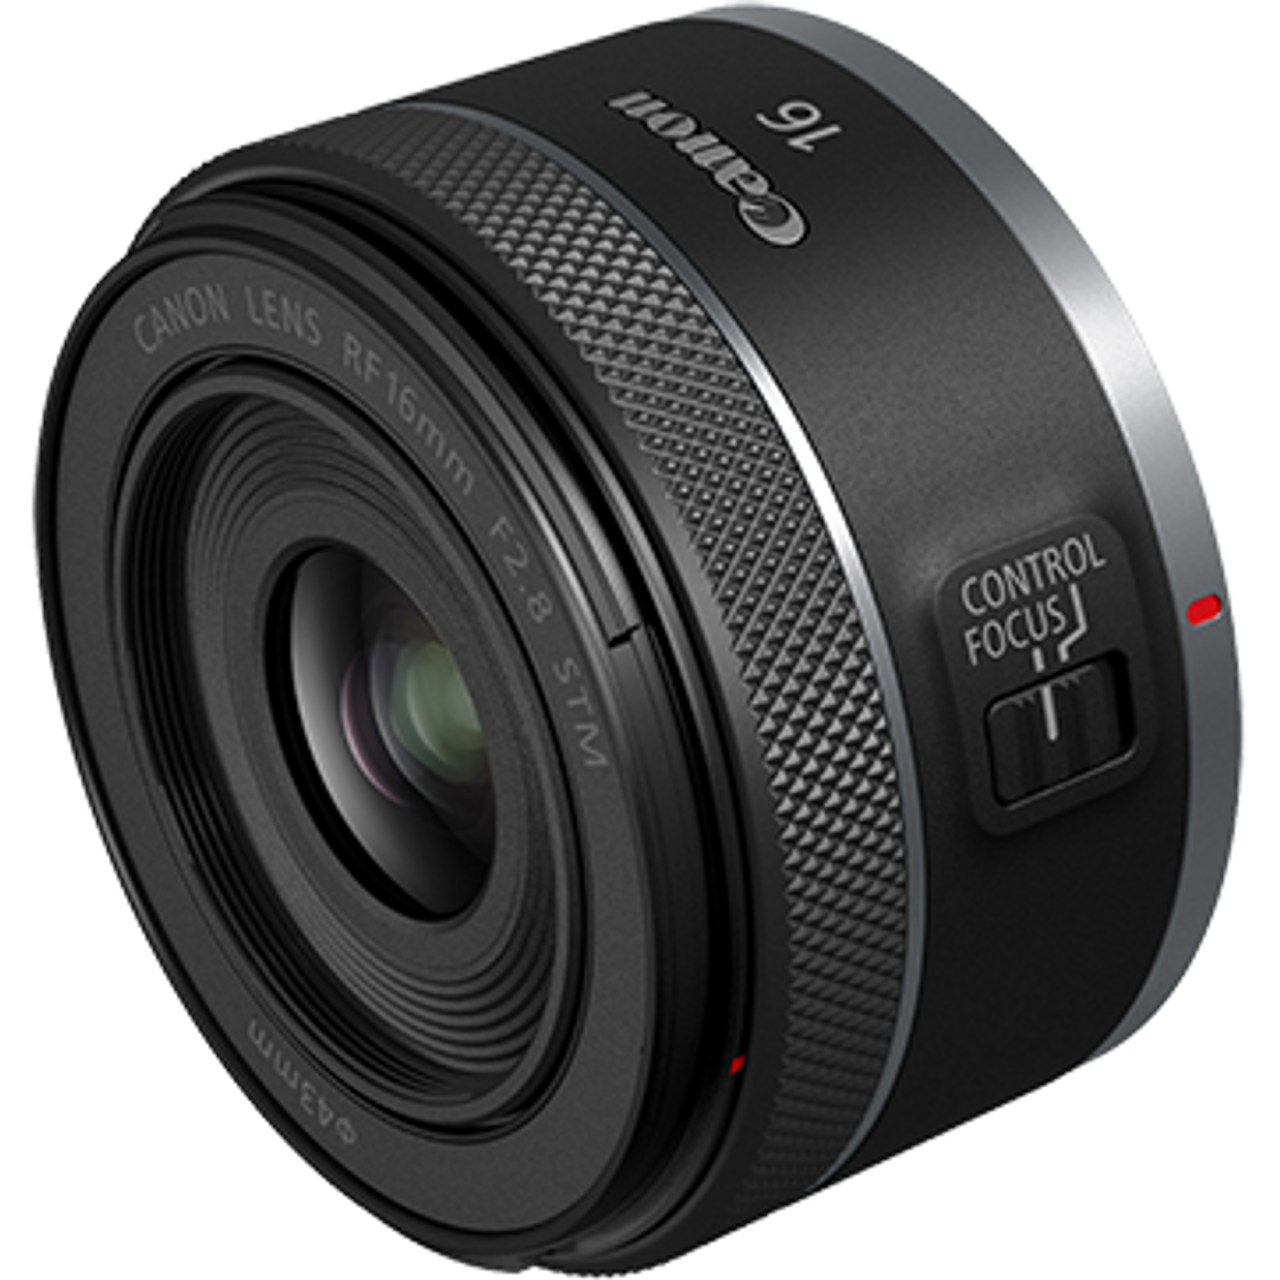 Canon RF 16mm f/2.8 STM Lens